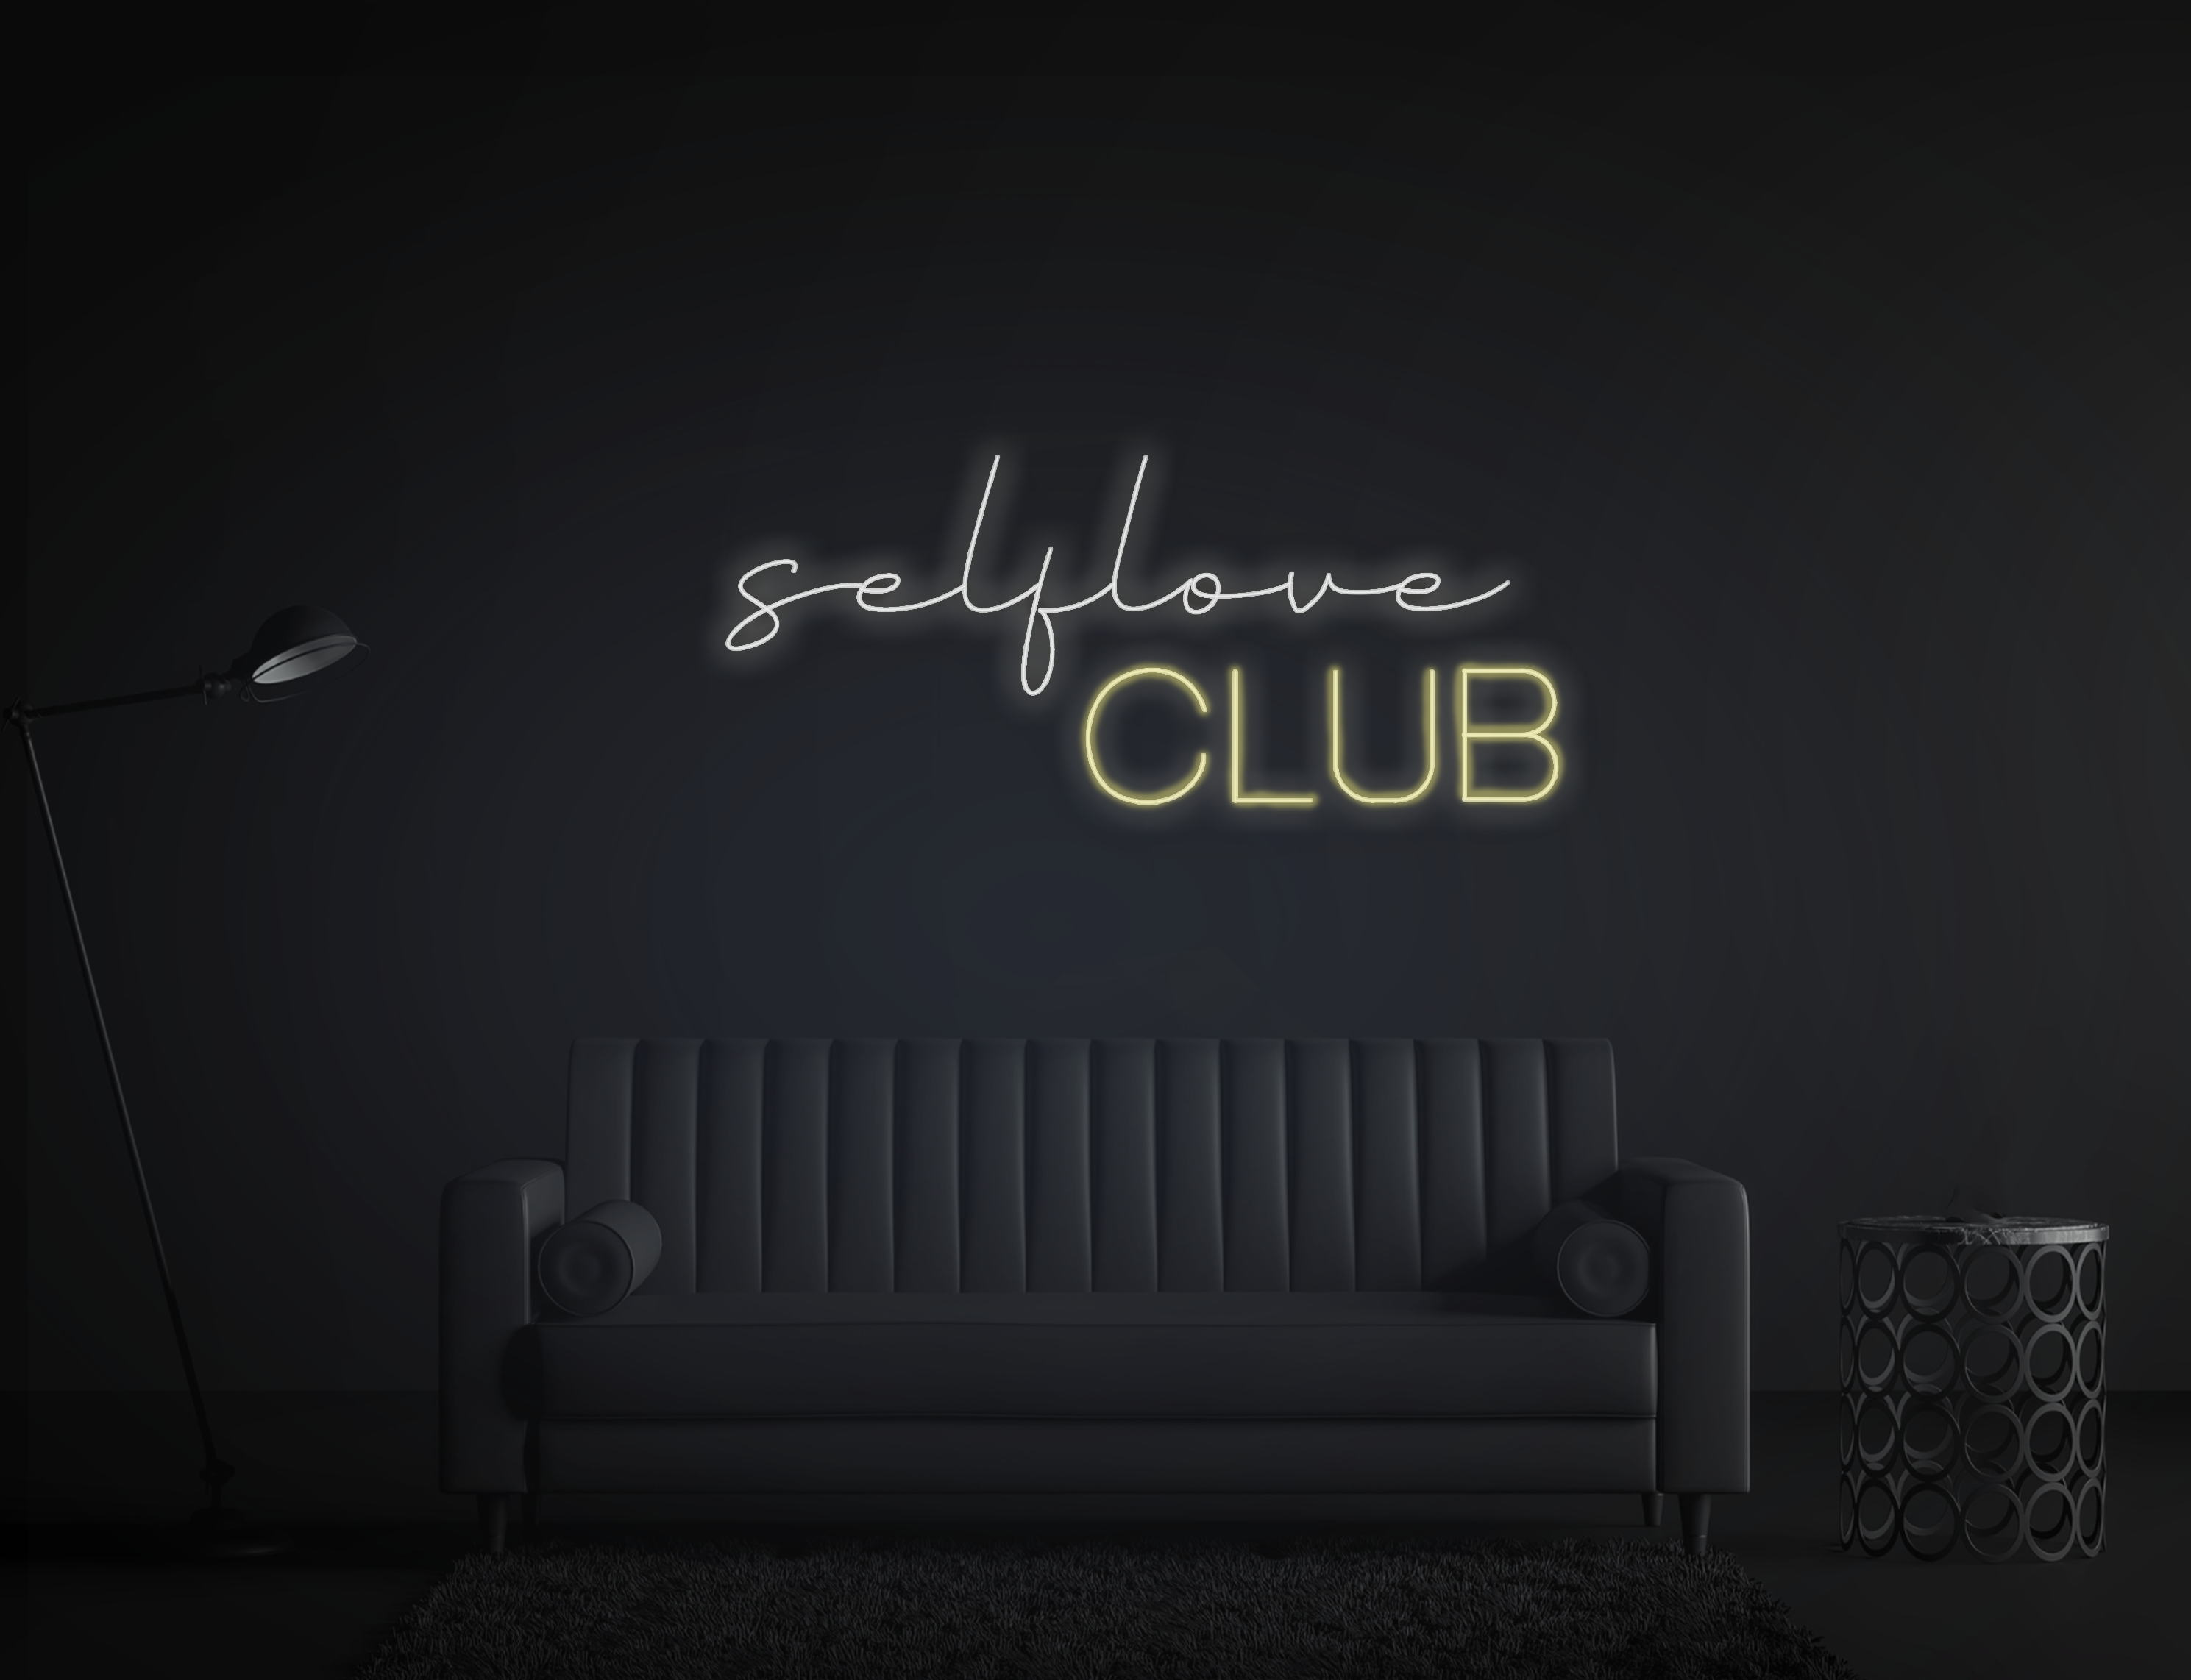 Selflove Club